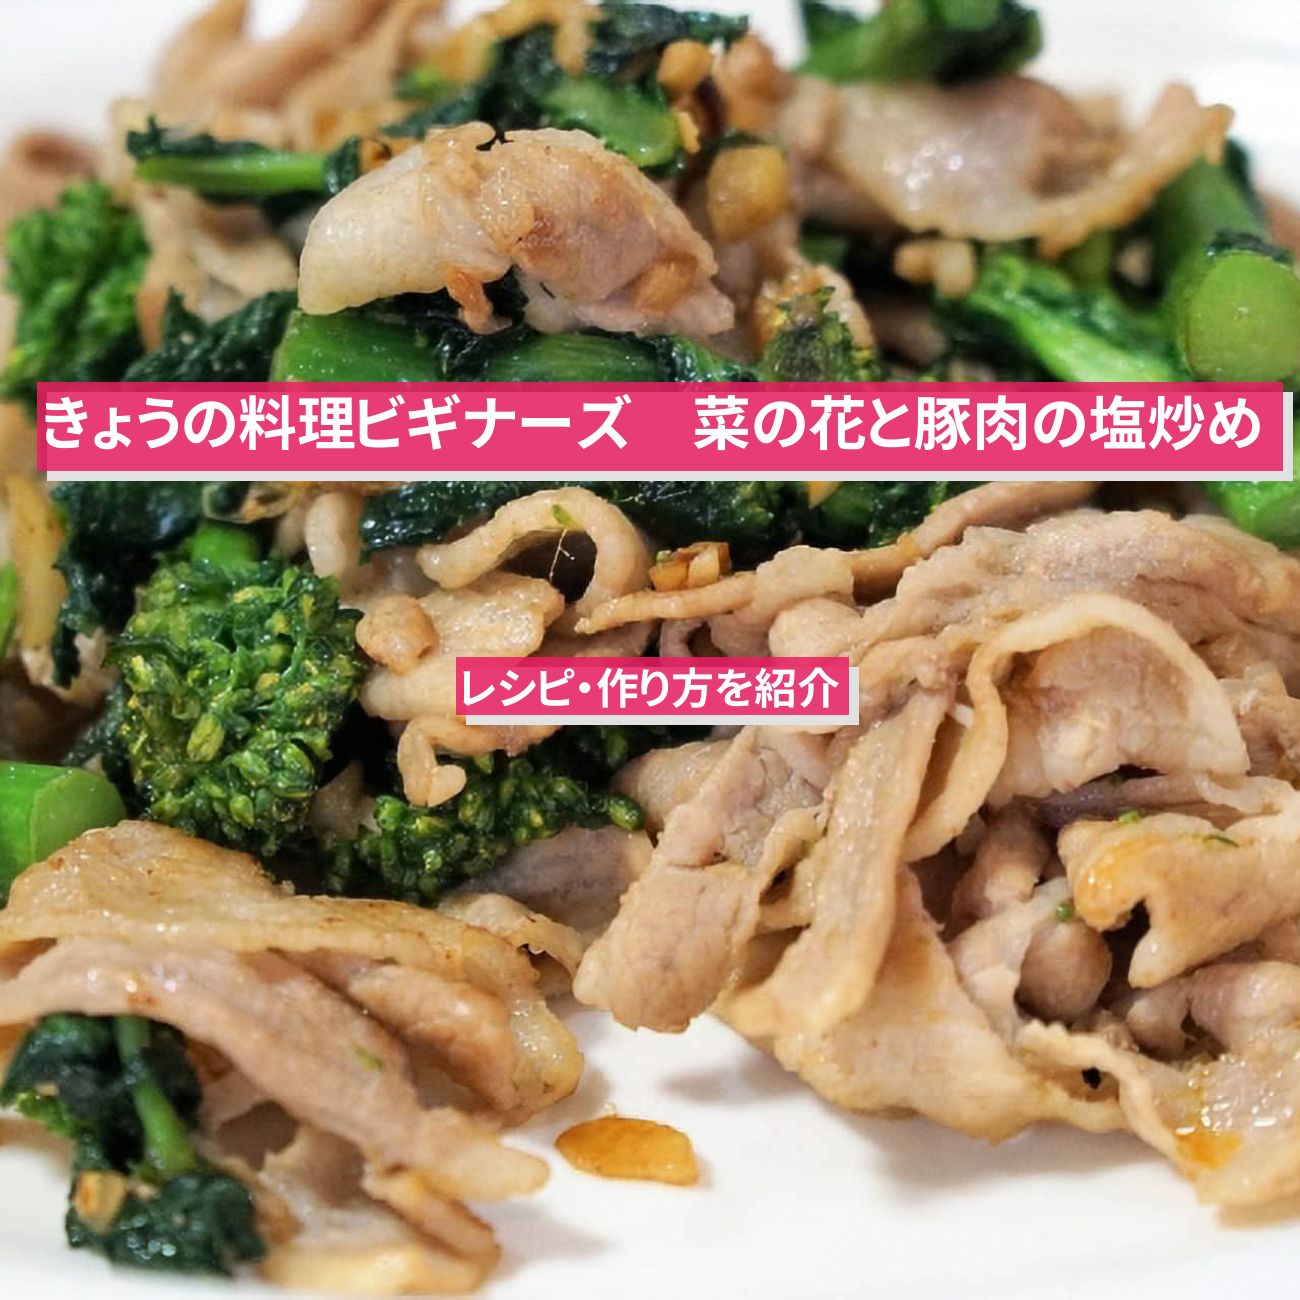 【きょうの料理ビギナーズ】『菜の花と豚肉の塩炒め』のレシピ・作り方を紹介